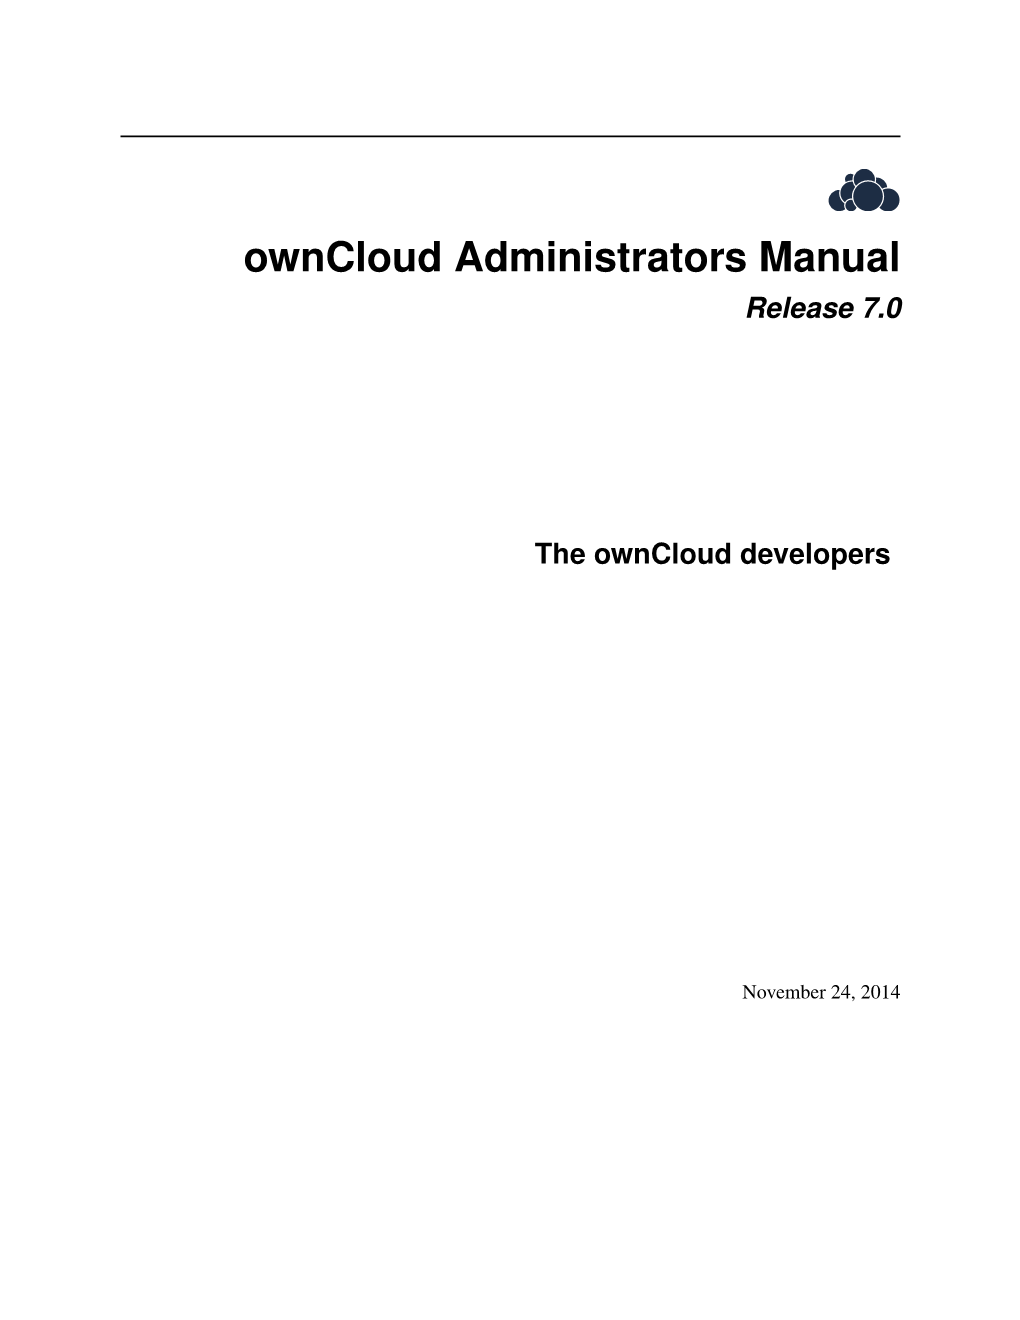 Owncloud Administrators Manual Release 7.0